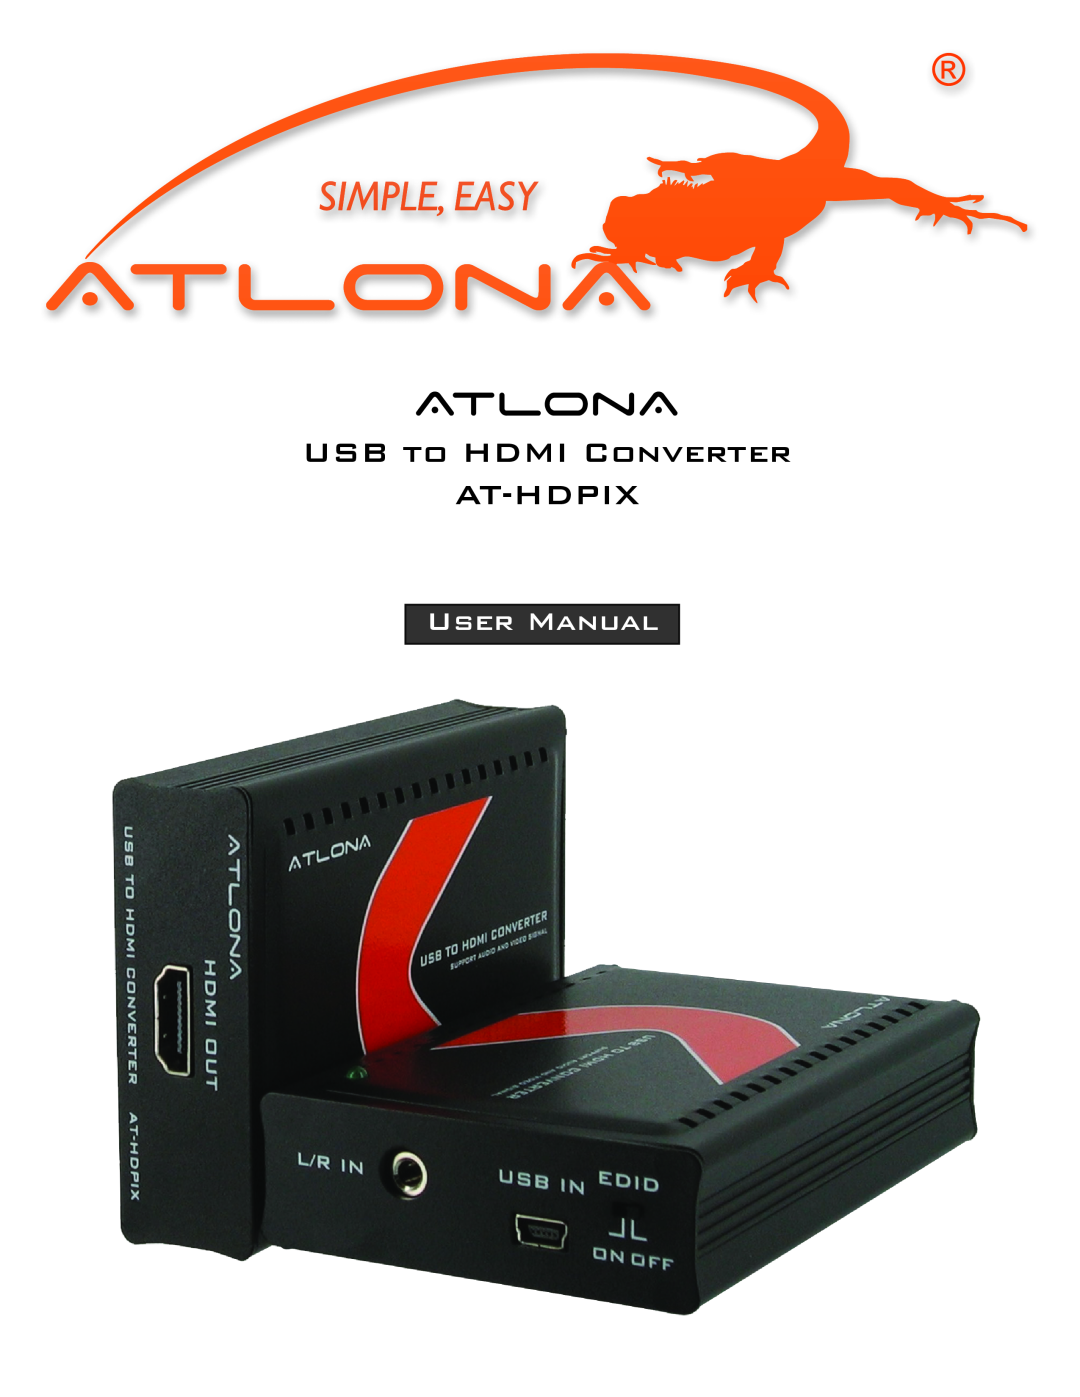 Atlona AT-HDPIX user manual Atlona, Usb To Hdmi Converter At-Hdpix, User Manual 